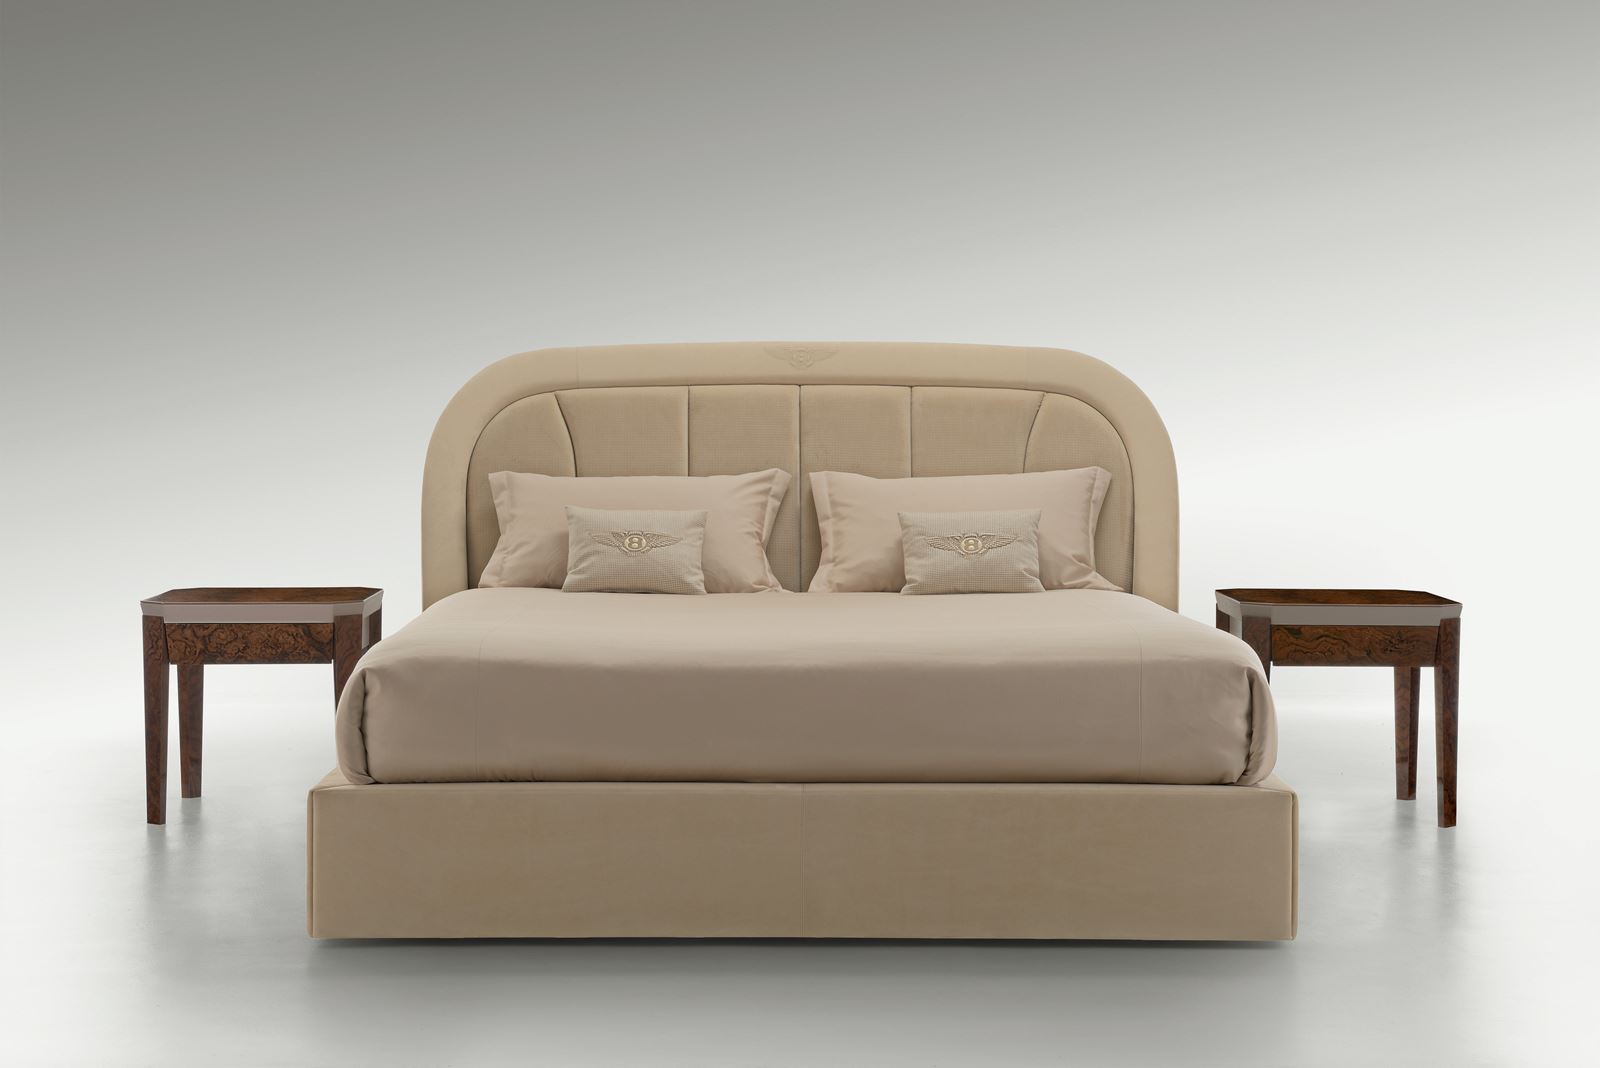 bentley atlantis ivory bedroom furniture